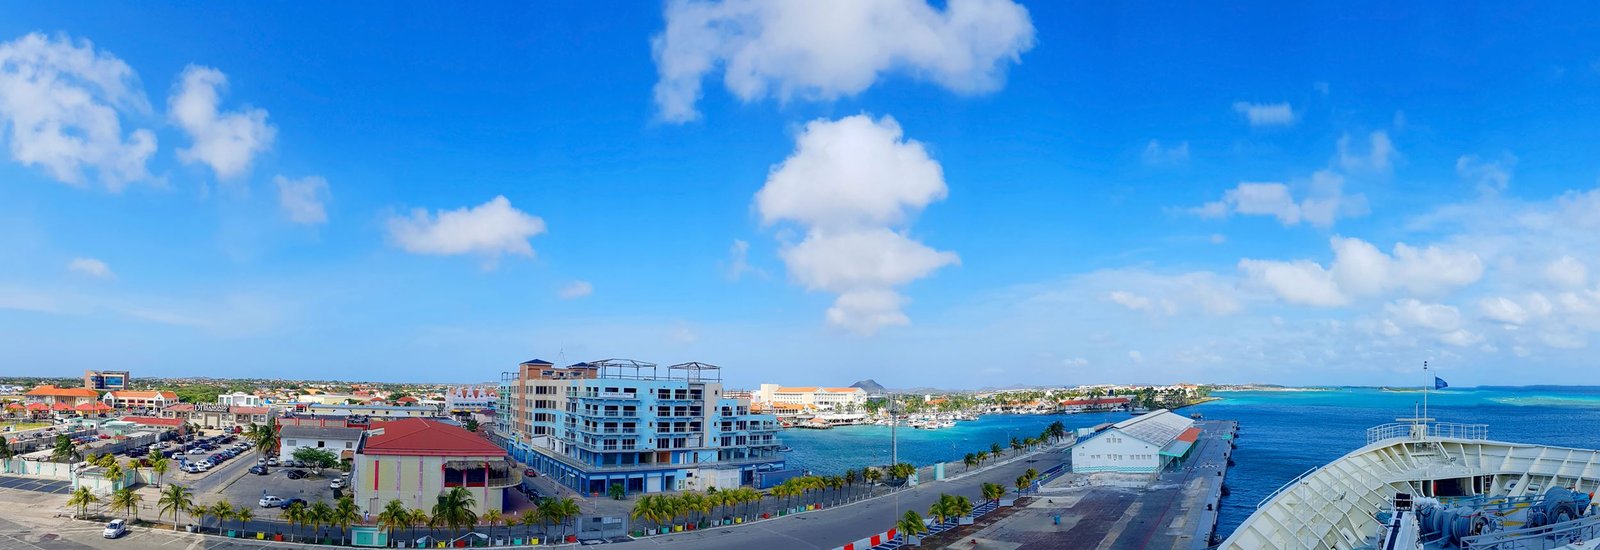 Oranjestad de hoofdstad van Aruba • ABC Eilanden